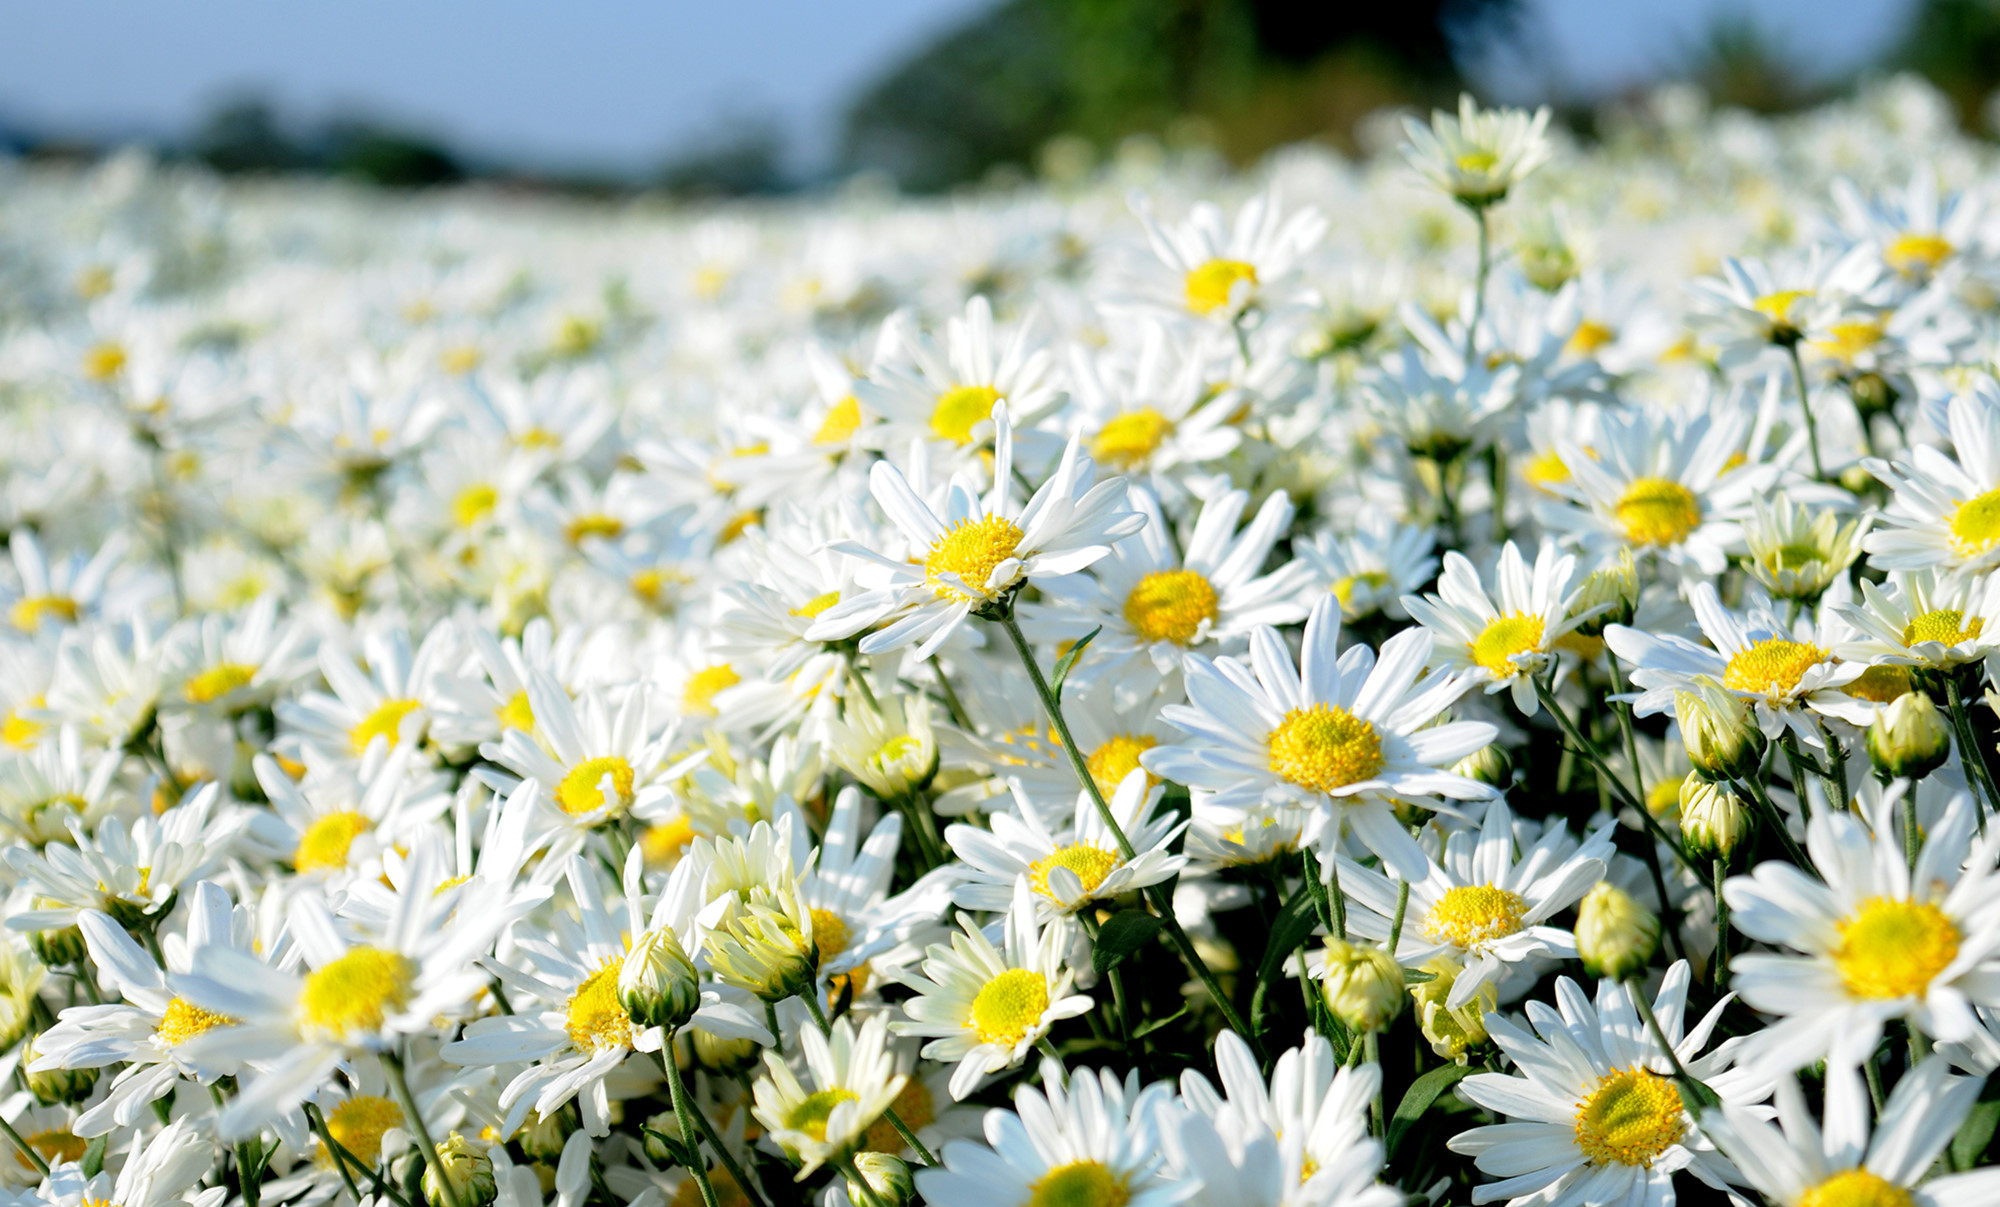 Màu trắng thanh khiết của hoa cúc luôn tạo cảm giác vô cùng dịu dàng và tươi sáng cho người tận hưởng. Bức tranh hoa cúc trắng sẽ đem lại cho bạn những giây phút thư giãn, thoải mái, và đắm chìm trong không gian xanh tươi tự nhiên.